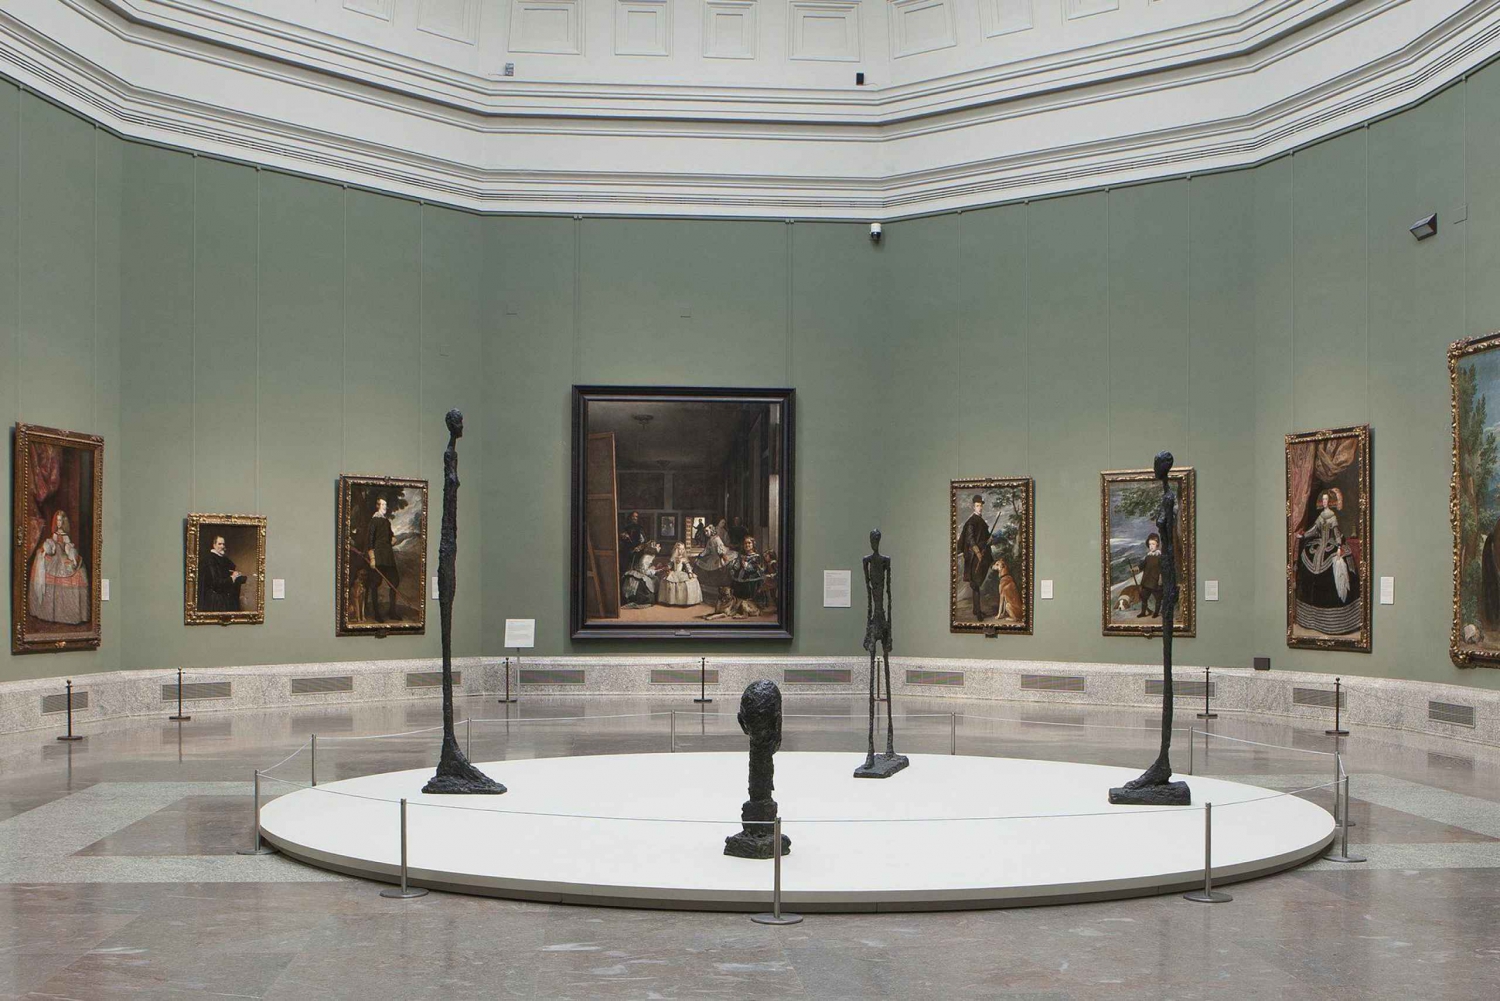 Madryt: Wycieczka do muzeów Prado, Królowej Zofii i Thyssen-Bornemisza